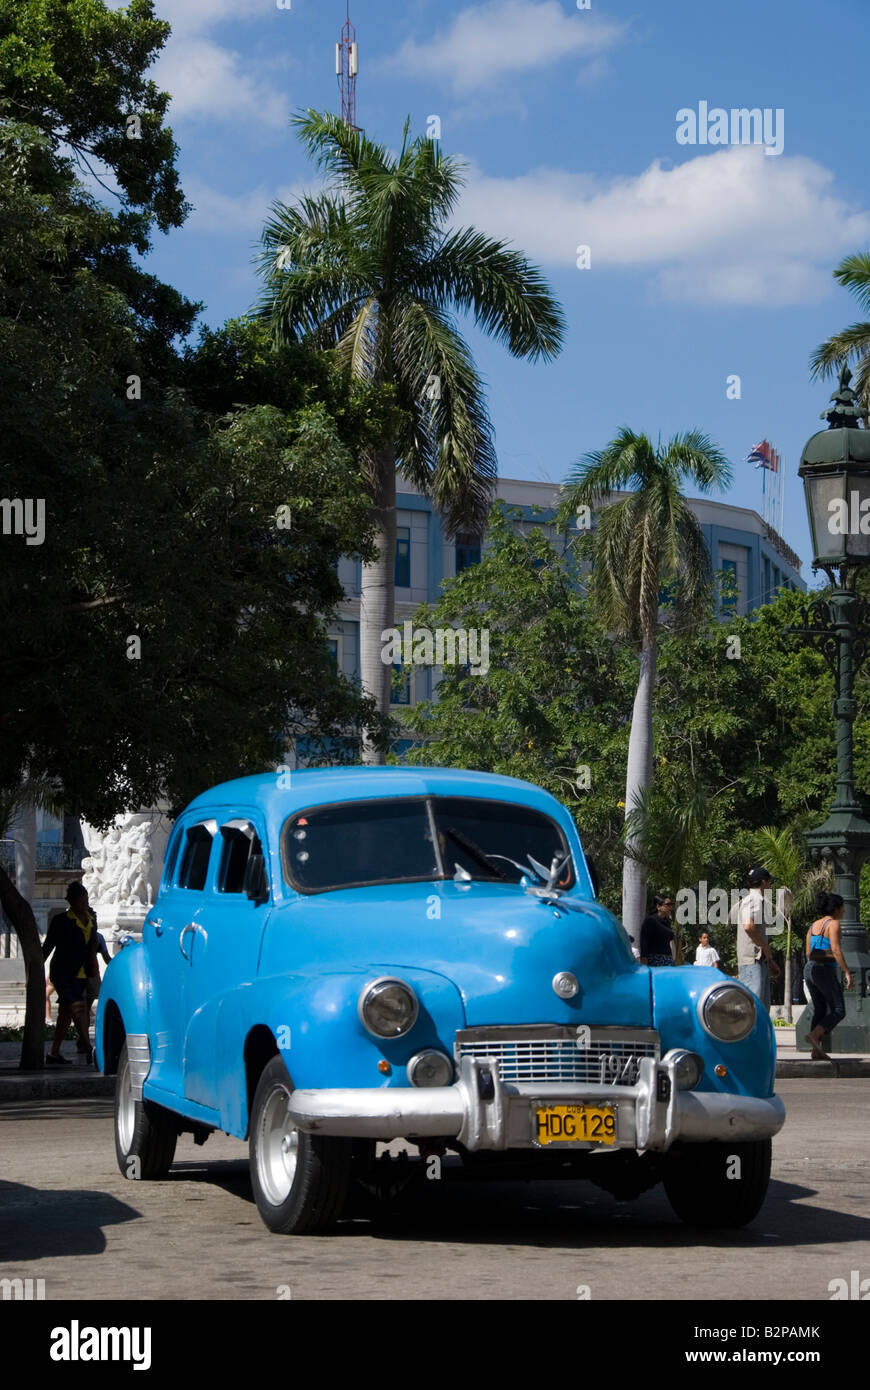 Alte amerikanische Oldtimer im Parque Central in Habana Vieja Havanna Kuba Stockfoto